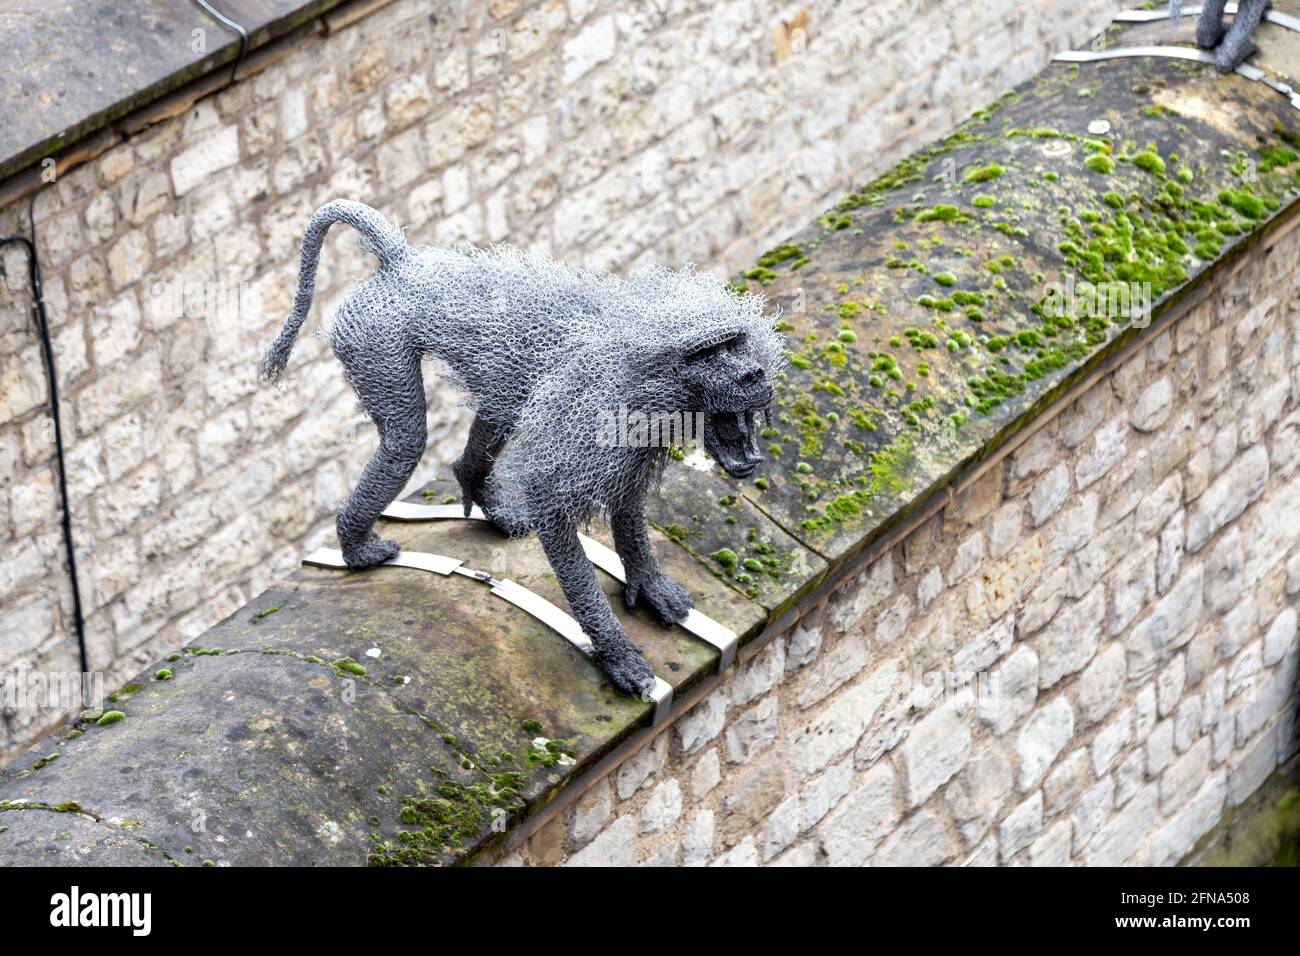 Escultura de mono babuino de malla metálica del artista Kendra Haste en la Torre de Londres, Londres, Reino Unido Foto de stock